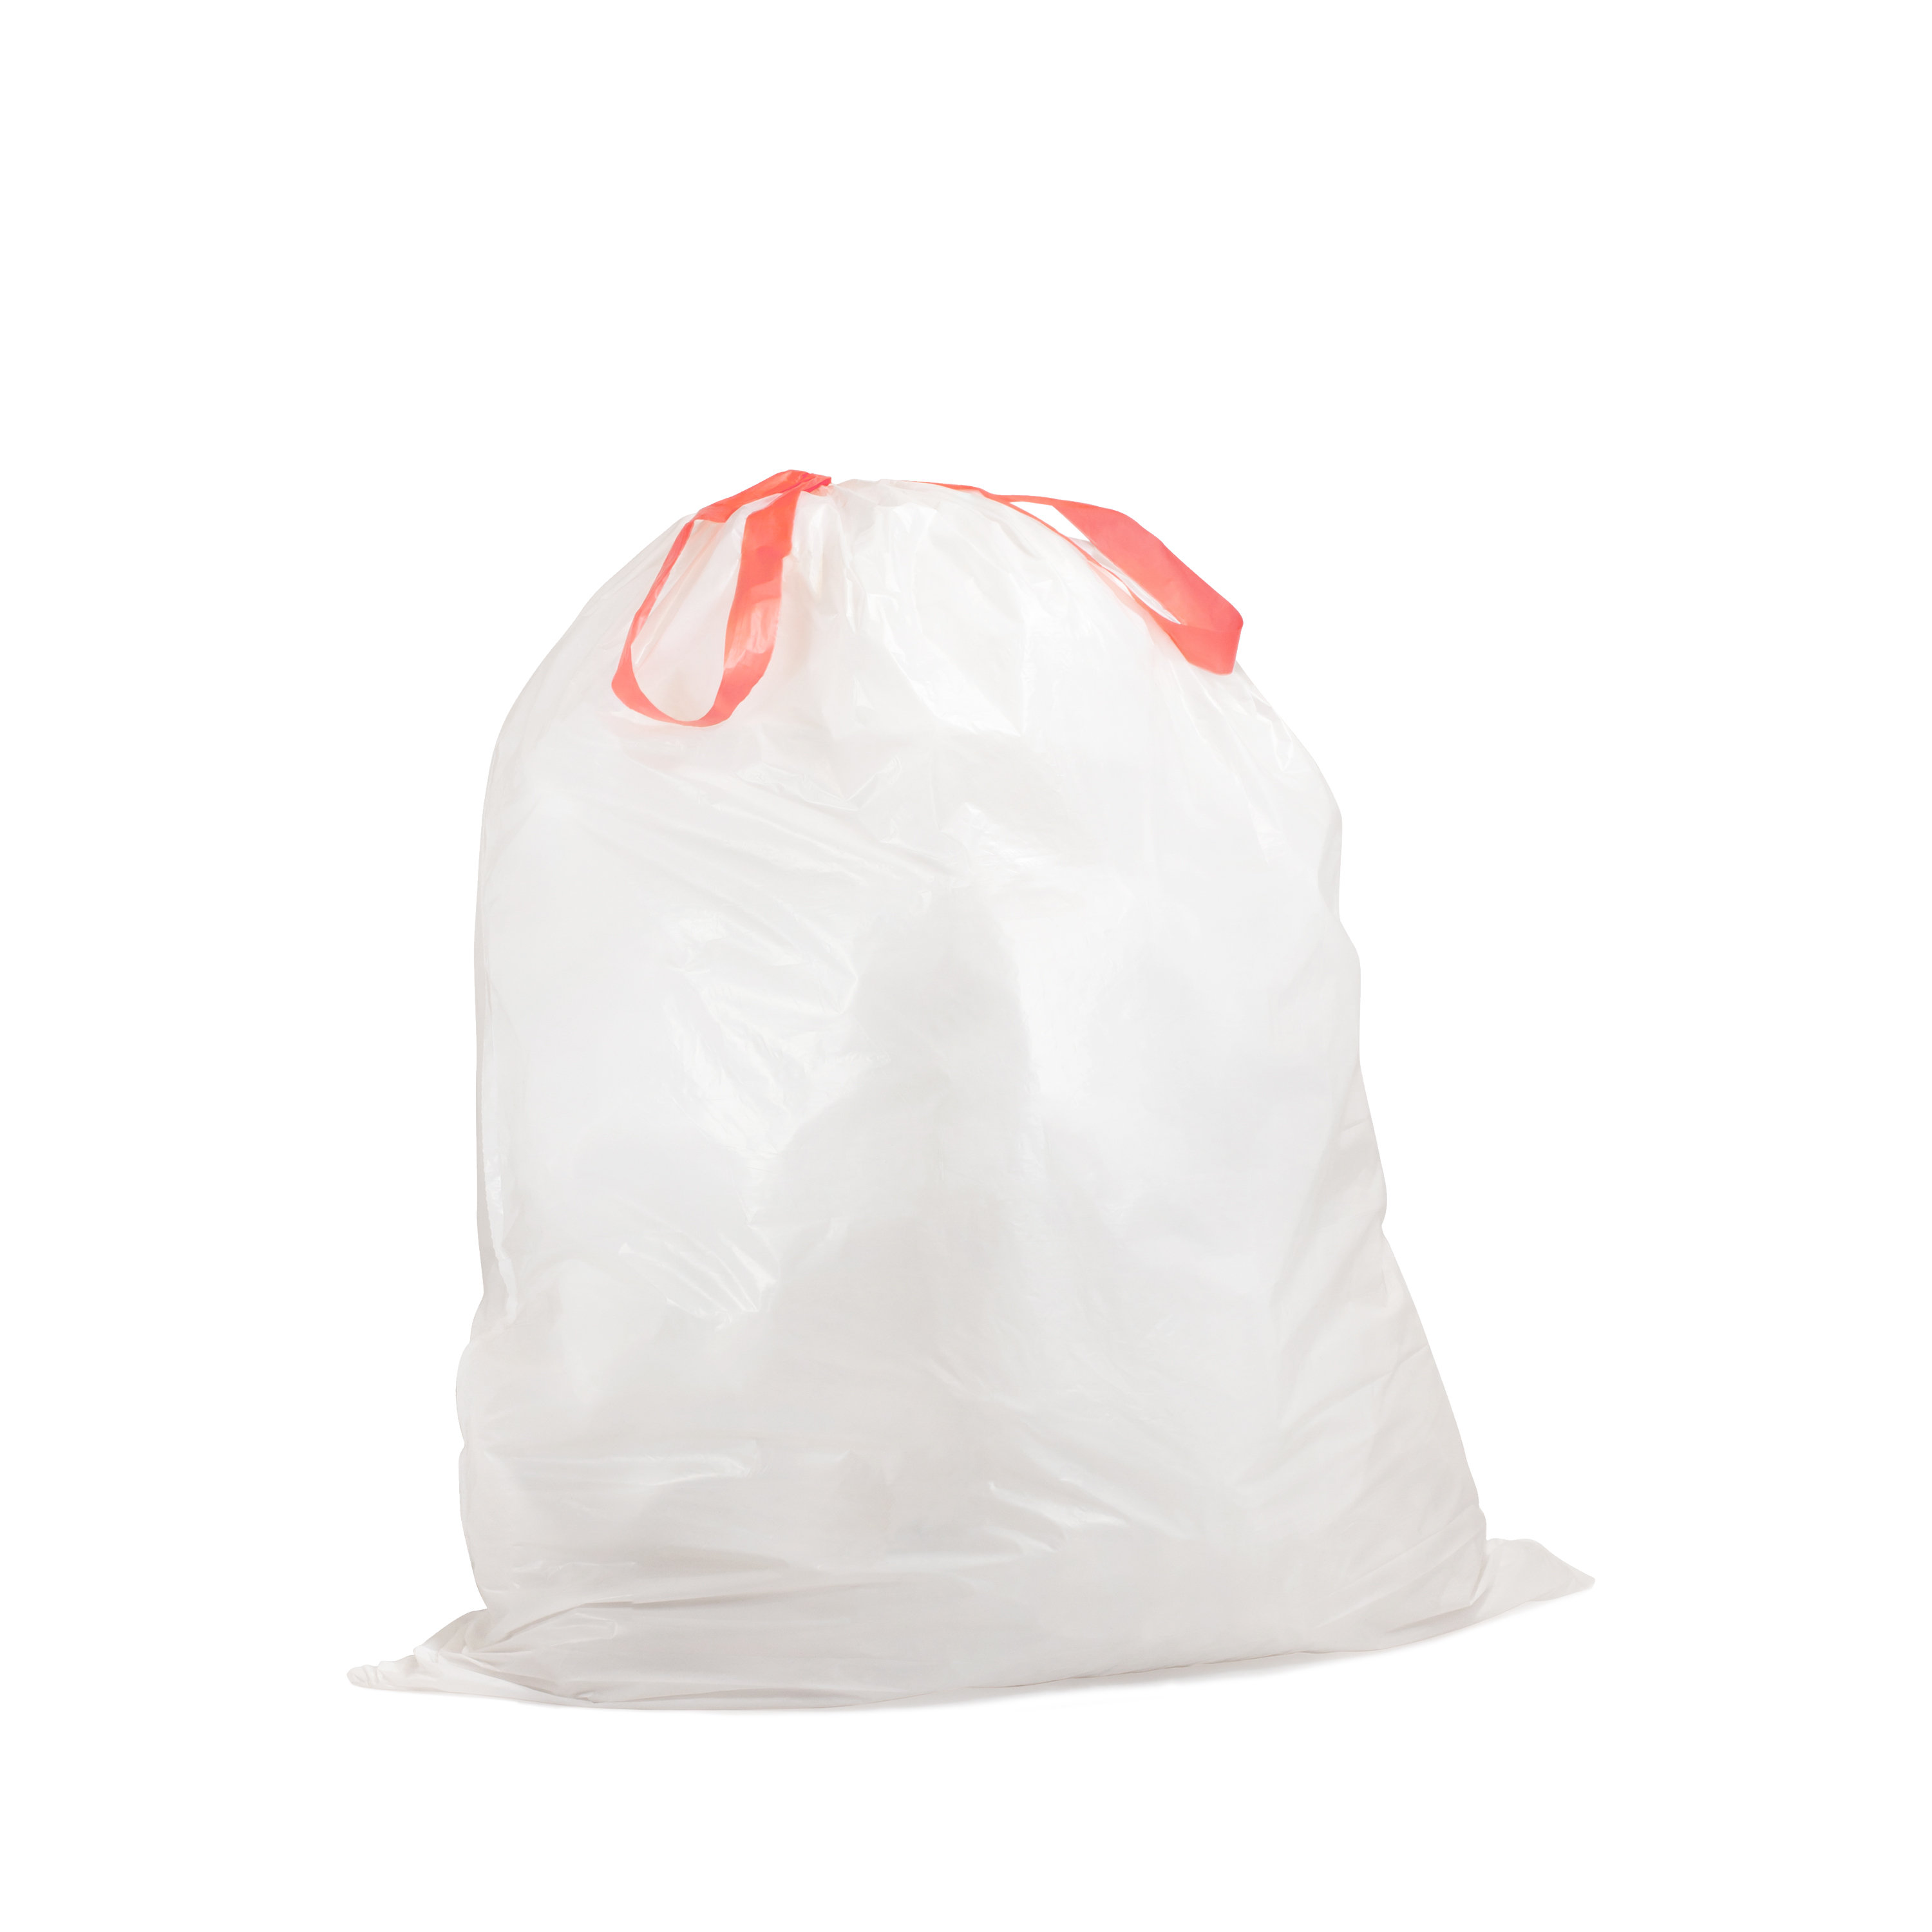 Qualiazero 13 Gallons Plastic Trash Bags & Reviews